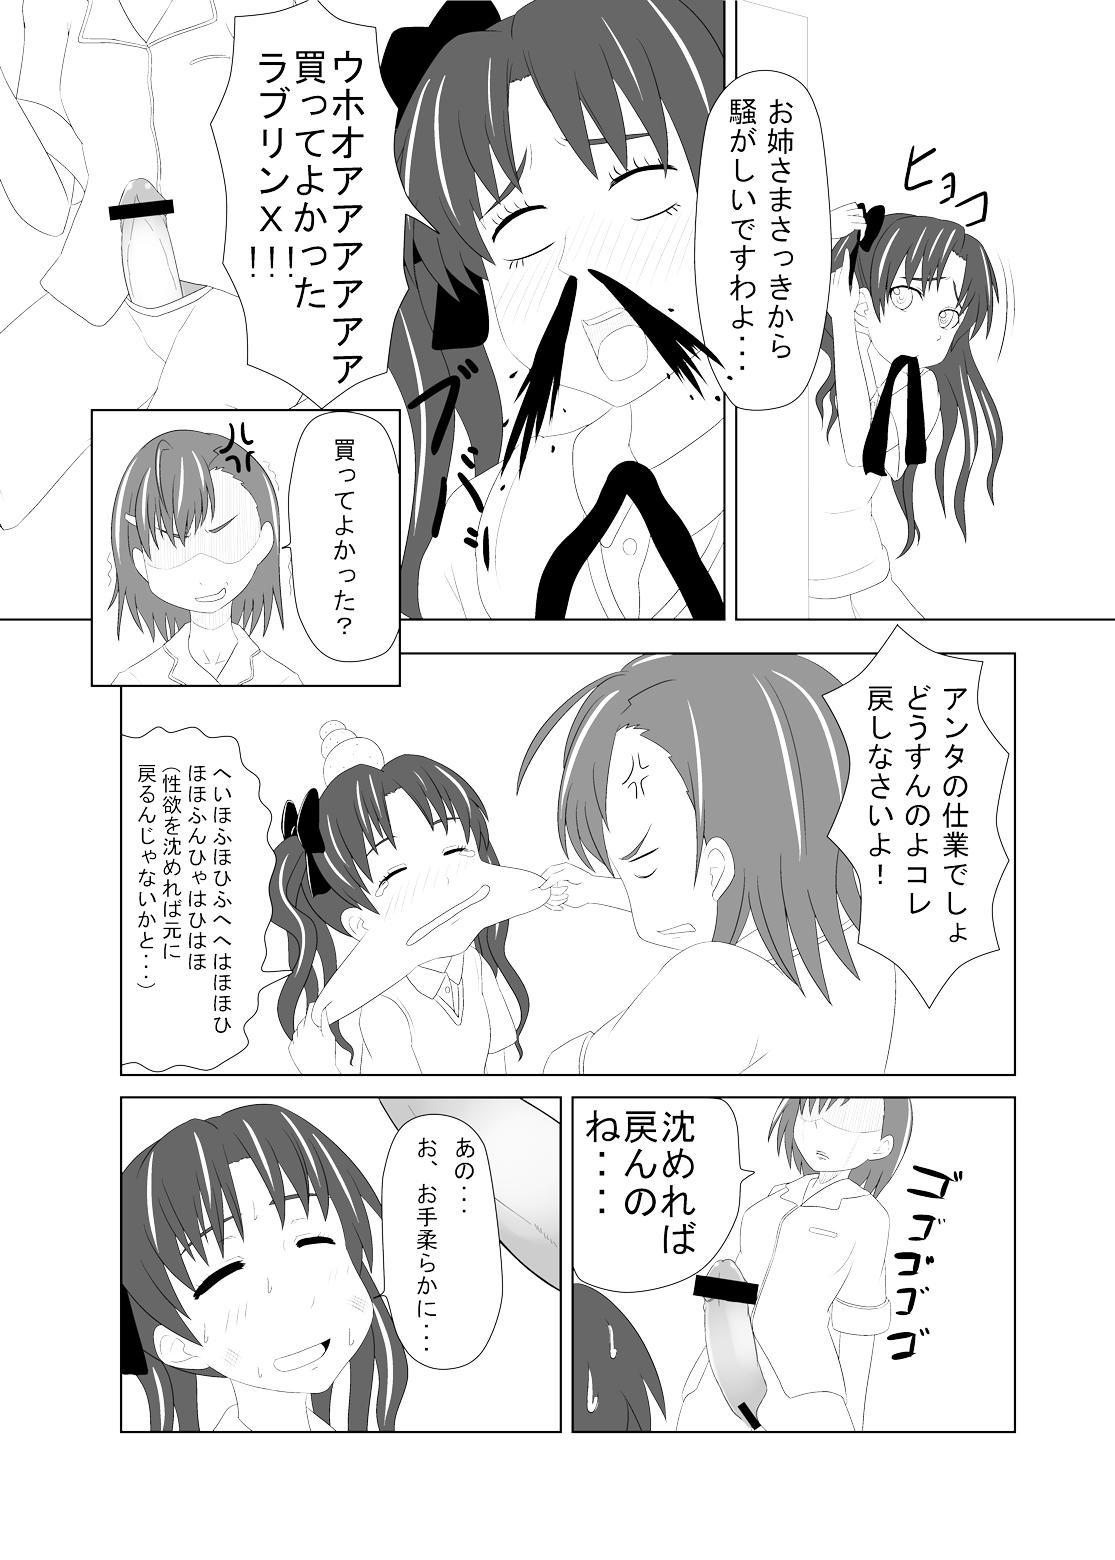 Cuminmouth Toaru Fuuki iin no Manabi Yori - Toaru kagaku no railgun Sextoys - Page 8